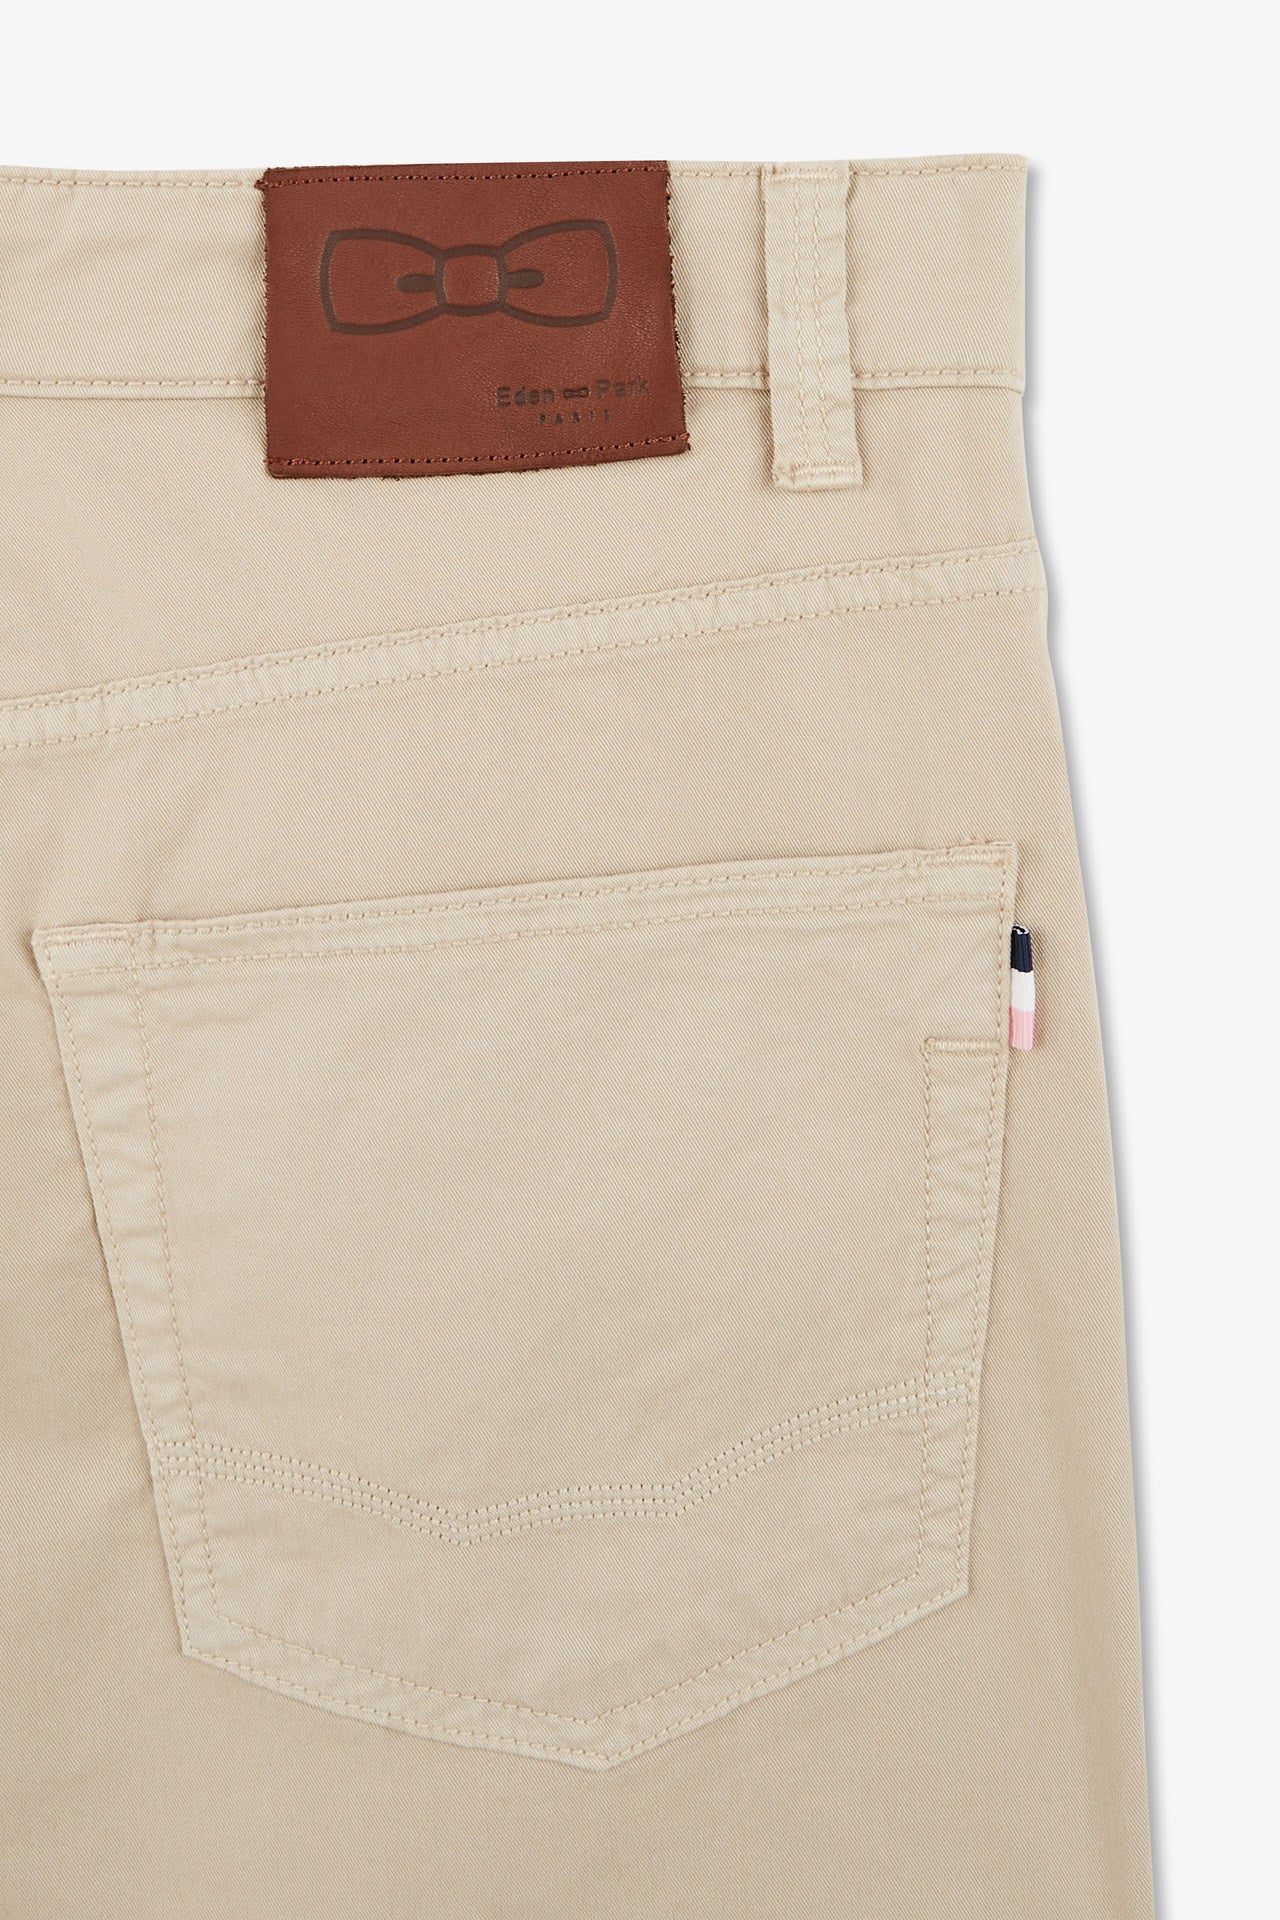 Pantalon beige droit 5 poches - Image 7